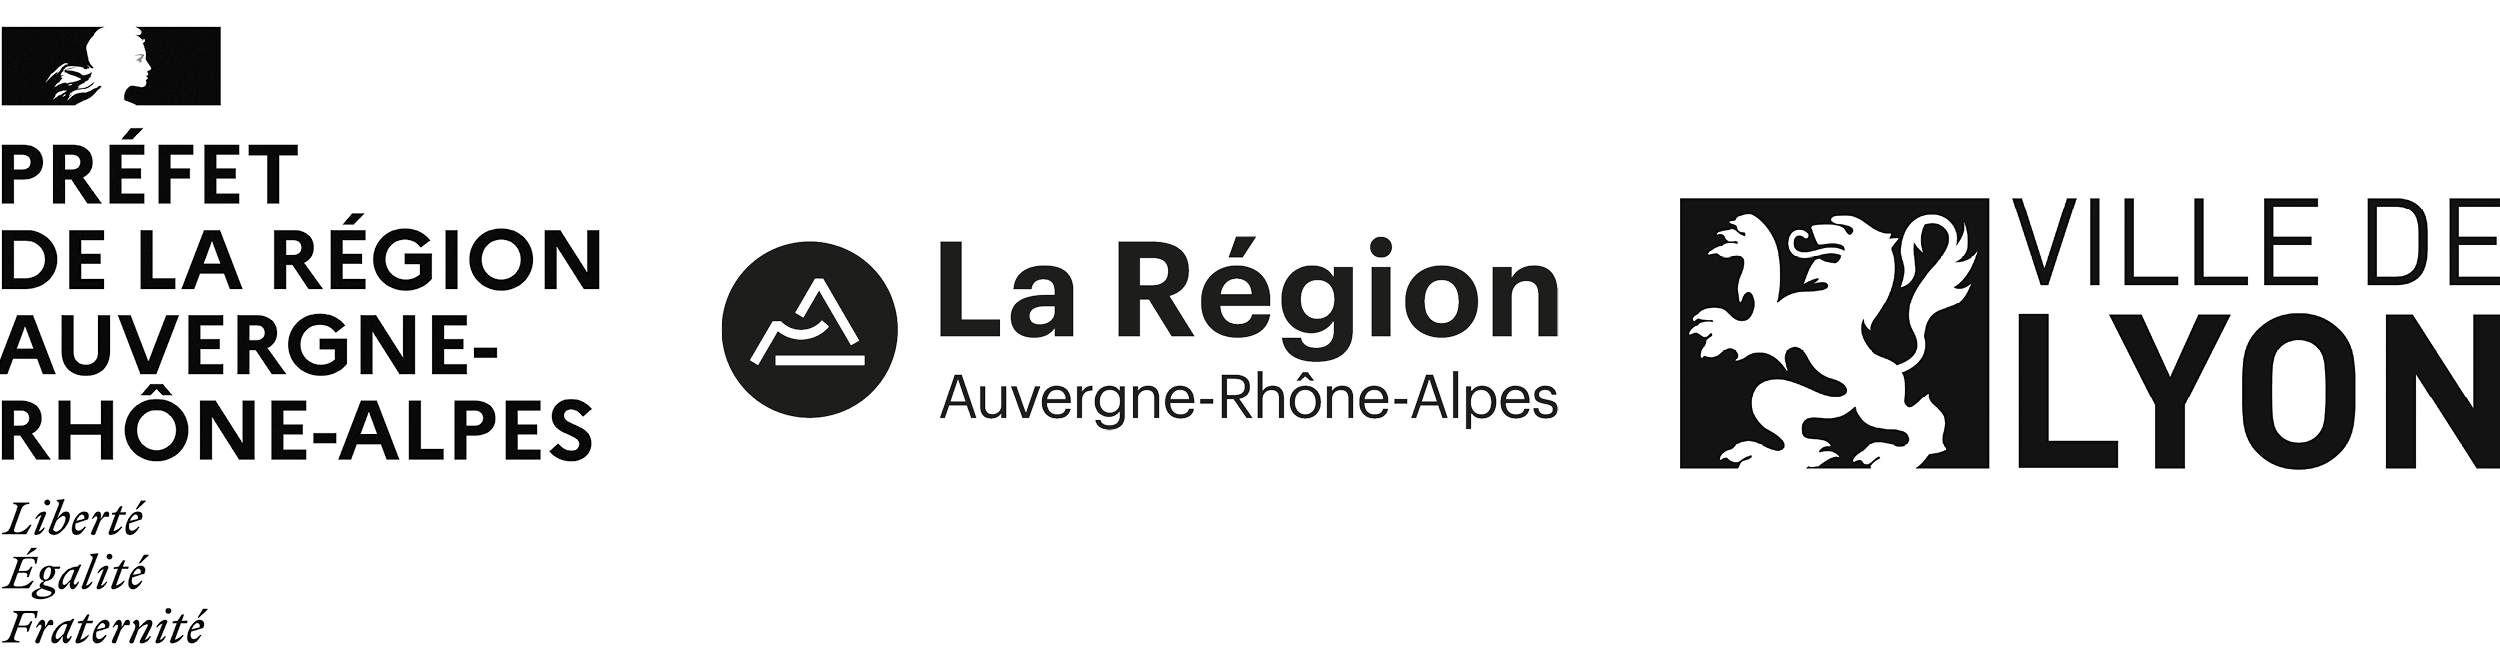 Logos DRAC Ville de Lyon et Région Auvergne-Rhône-Alpes